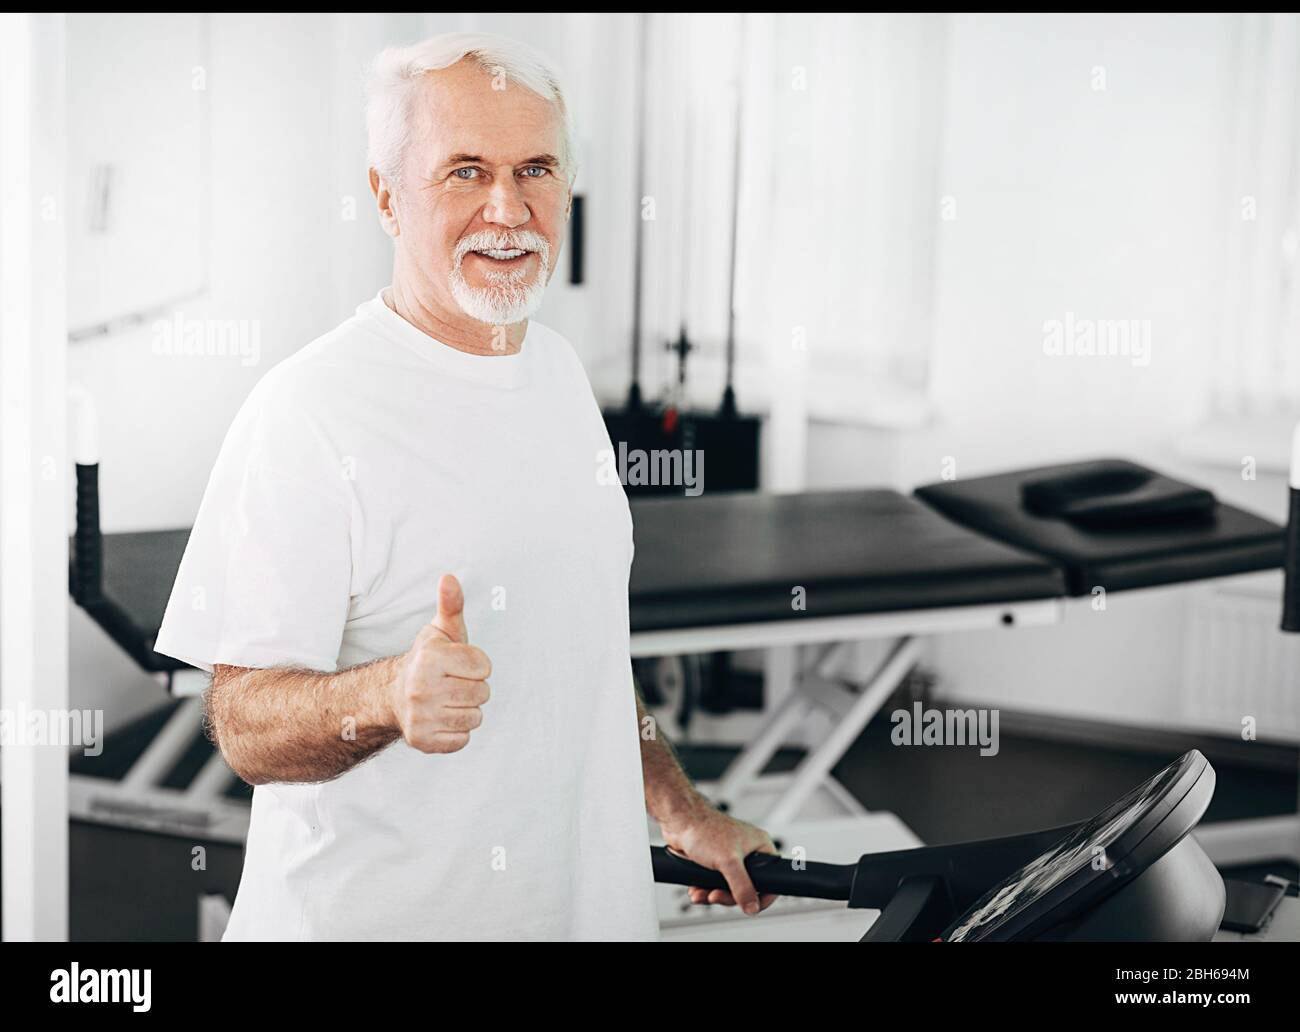 Der ältere Mann zeigte während des Trainings im Wellnesscenter die Daumen nach oben Stockfoto